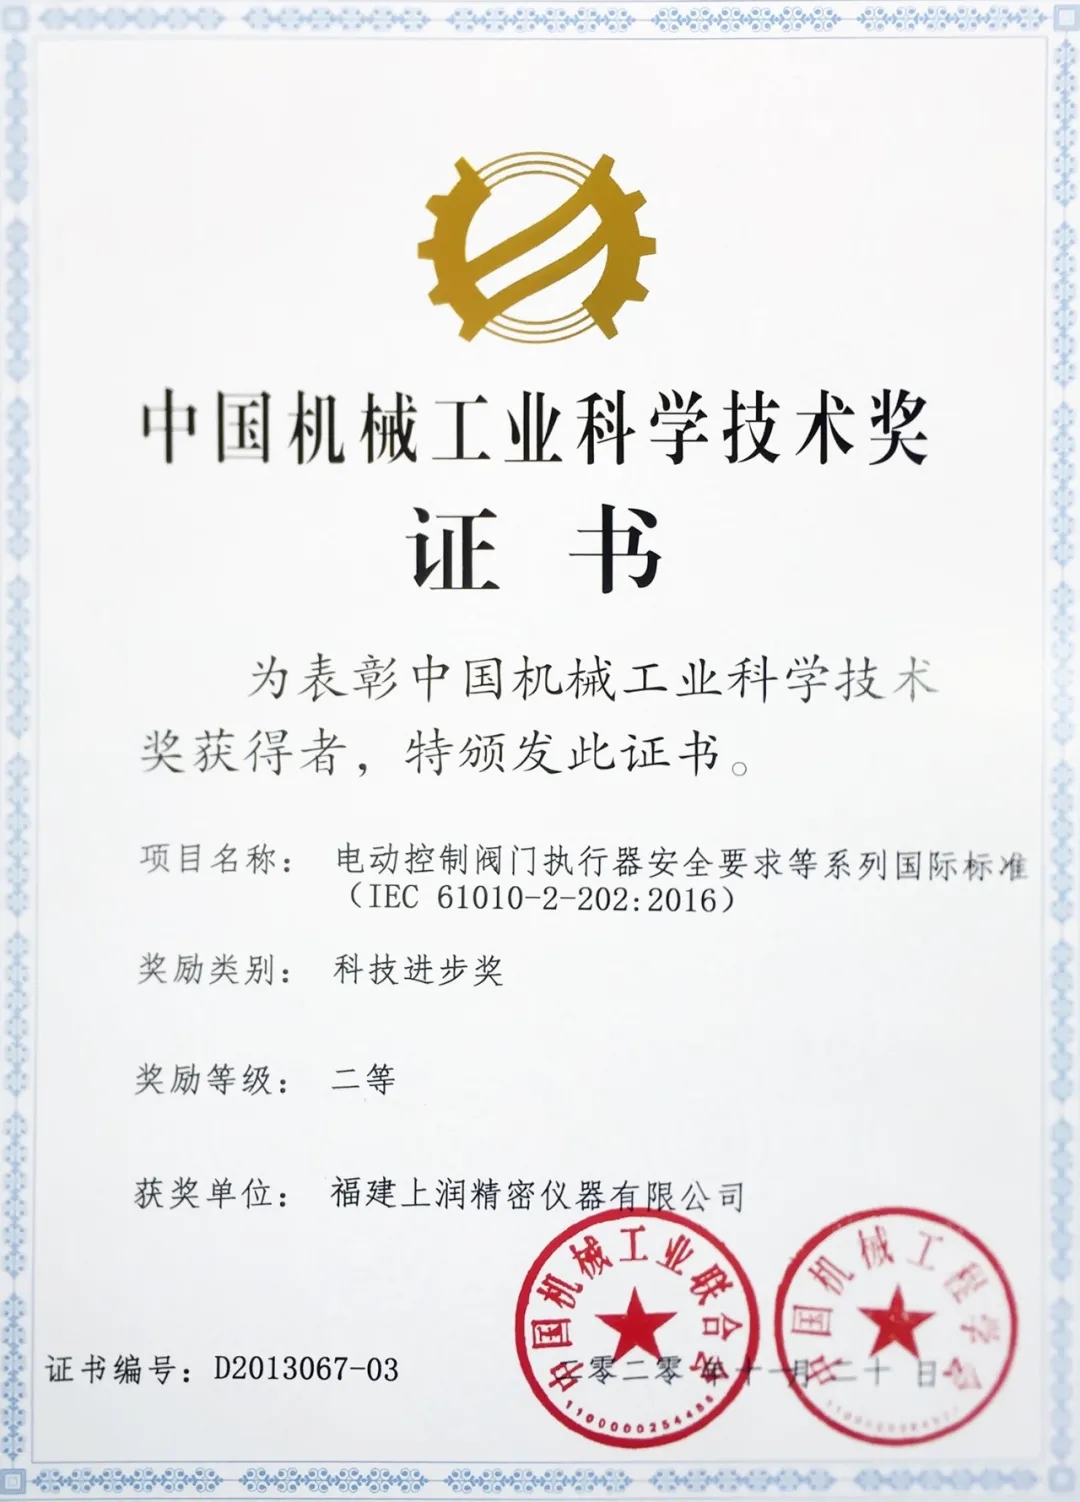 抢占国际标准化制高点，福建上润获“中国机械工业科学技术二等奖”